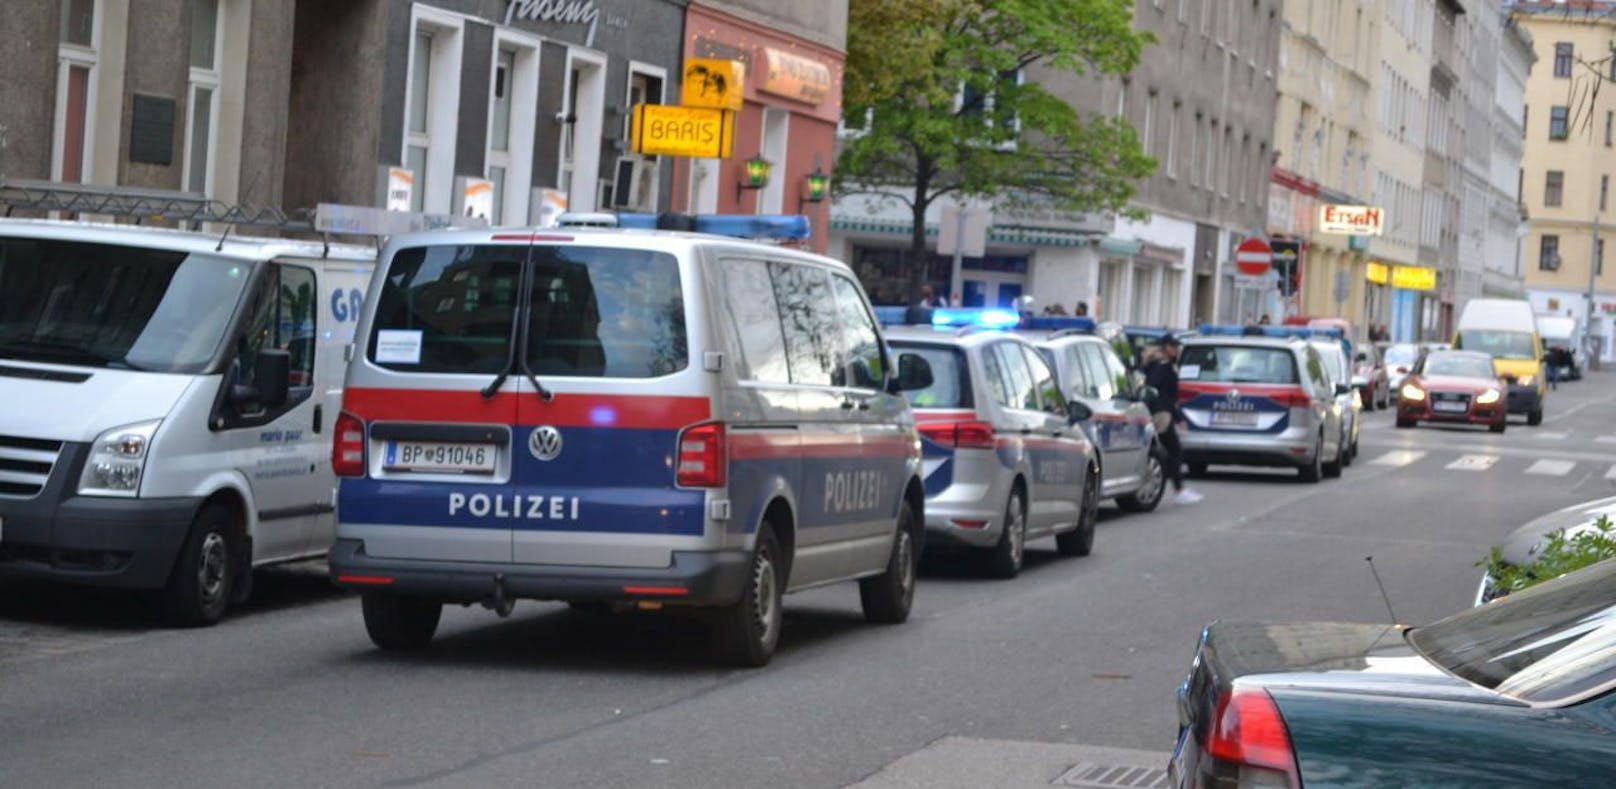 Polizei-Einsatz in Wien.